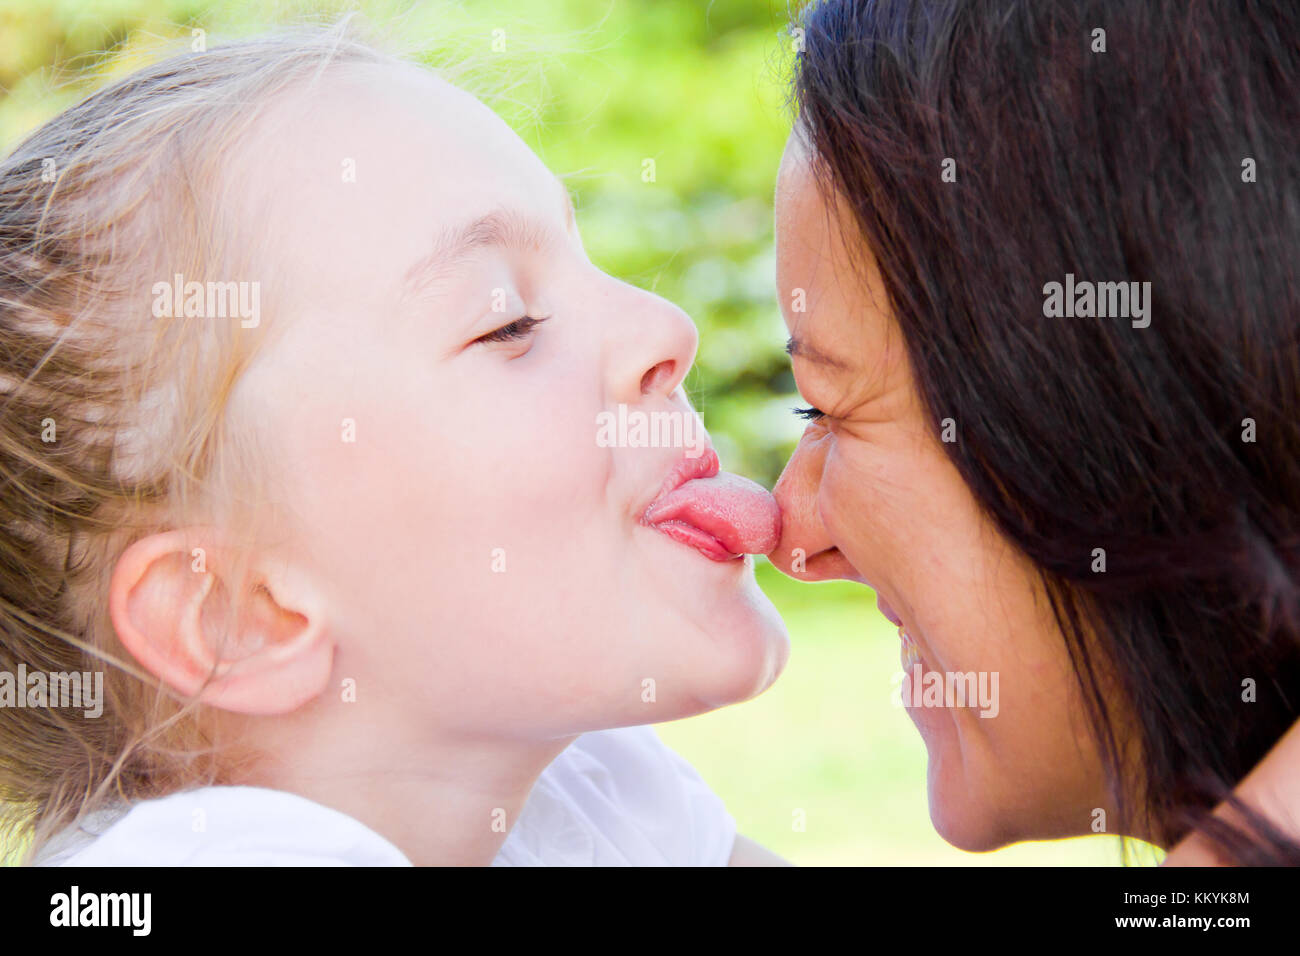 Папа мама лижет дочке. Мать целует дочь. Мама и дочь поцелуй с языком. Поцелуй мамы и дочери в губы. Мама целует дочку в губы.